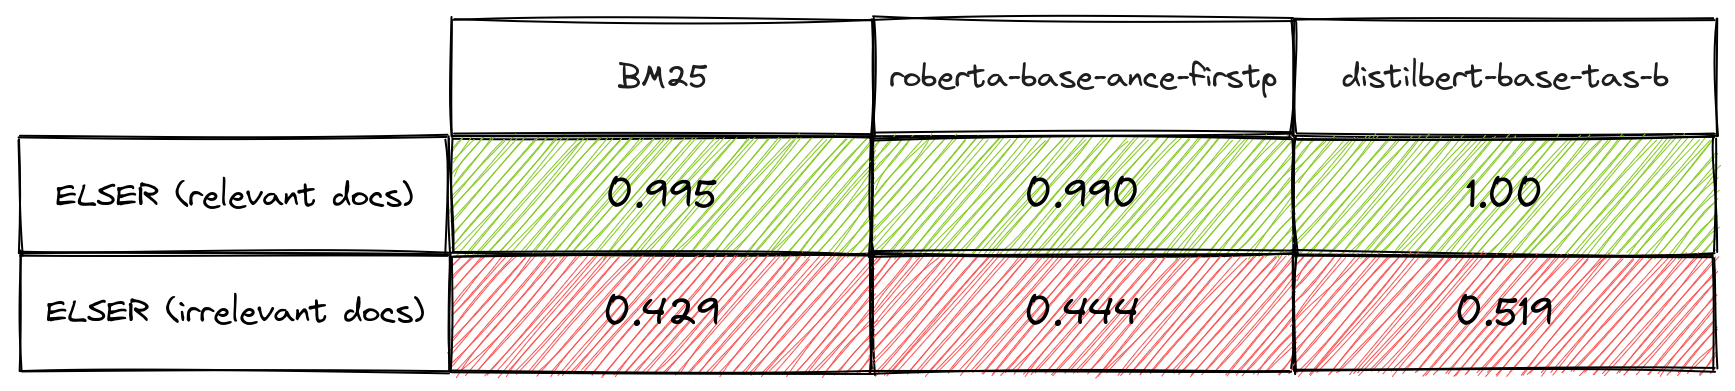 Tabelle 1: Überlappungskoeffizienten für drei Abrufalgorithmen